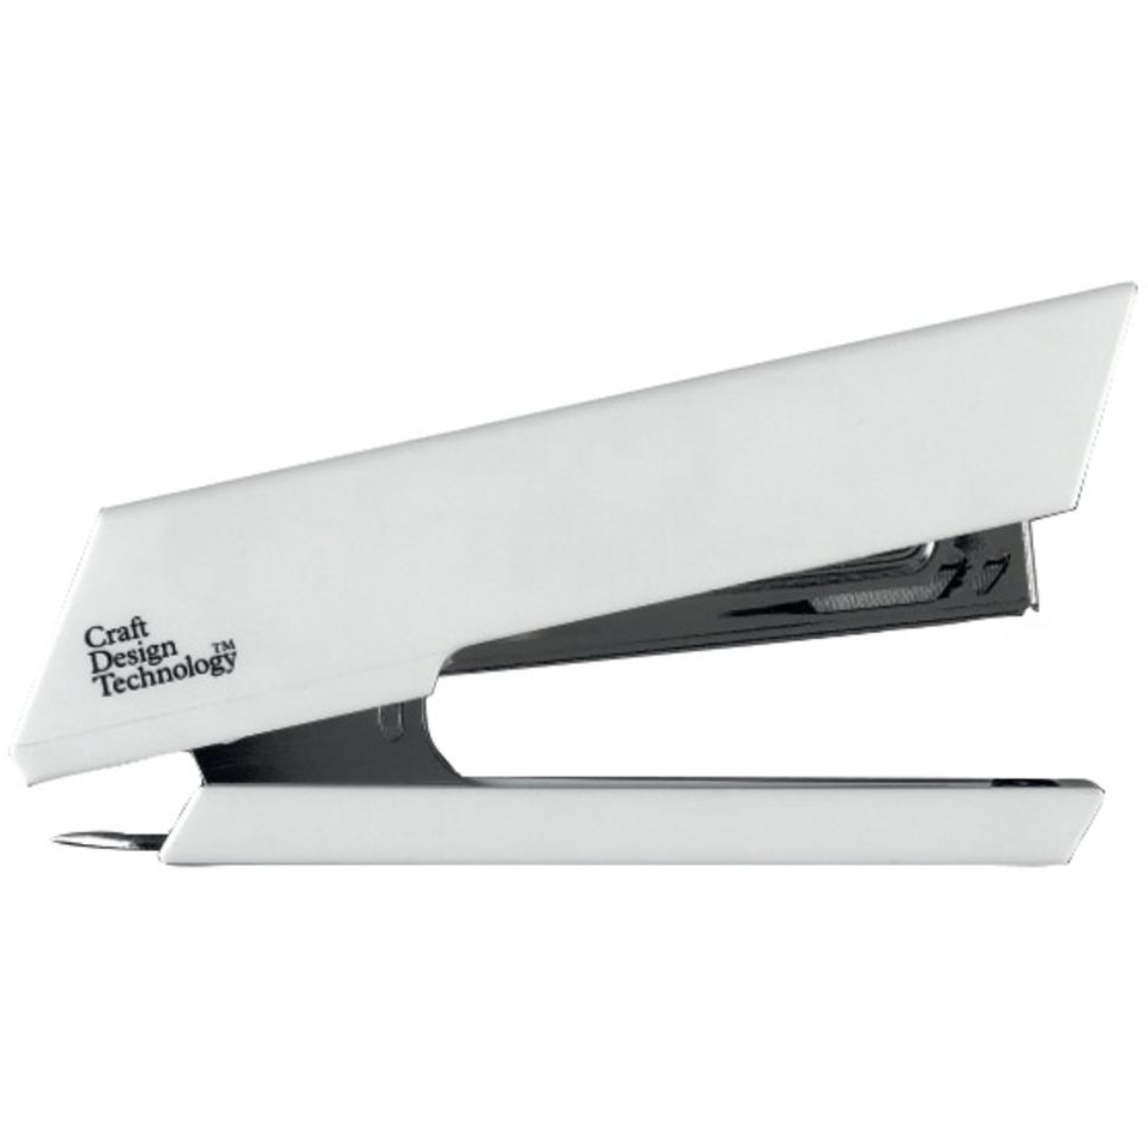 Craft & Design Technology Stapler - White